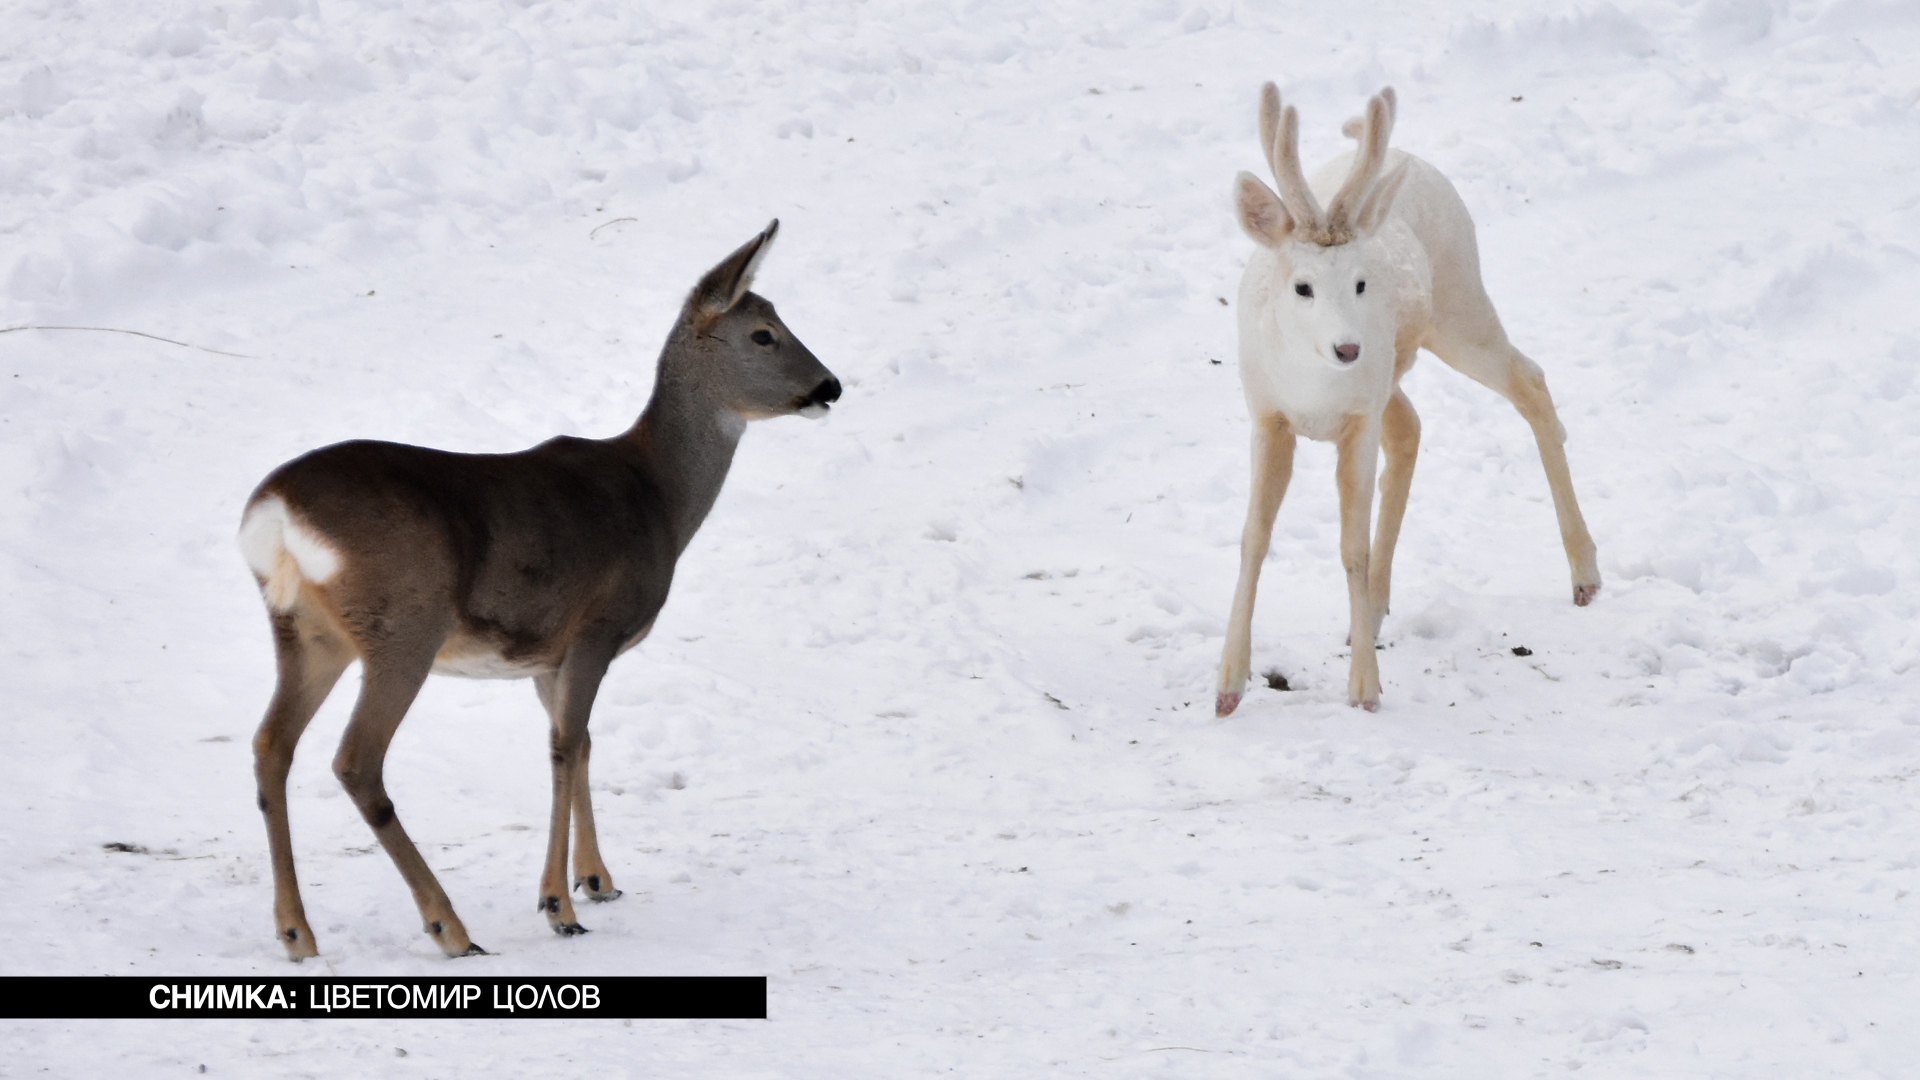 Красота: Заснеха уникално бяло създание в Родопите ВИДЕО